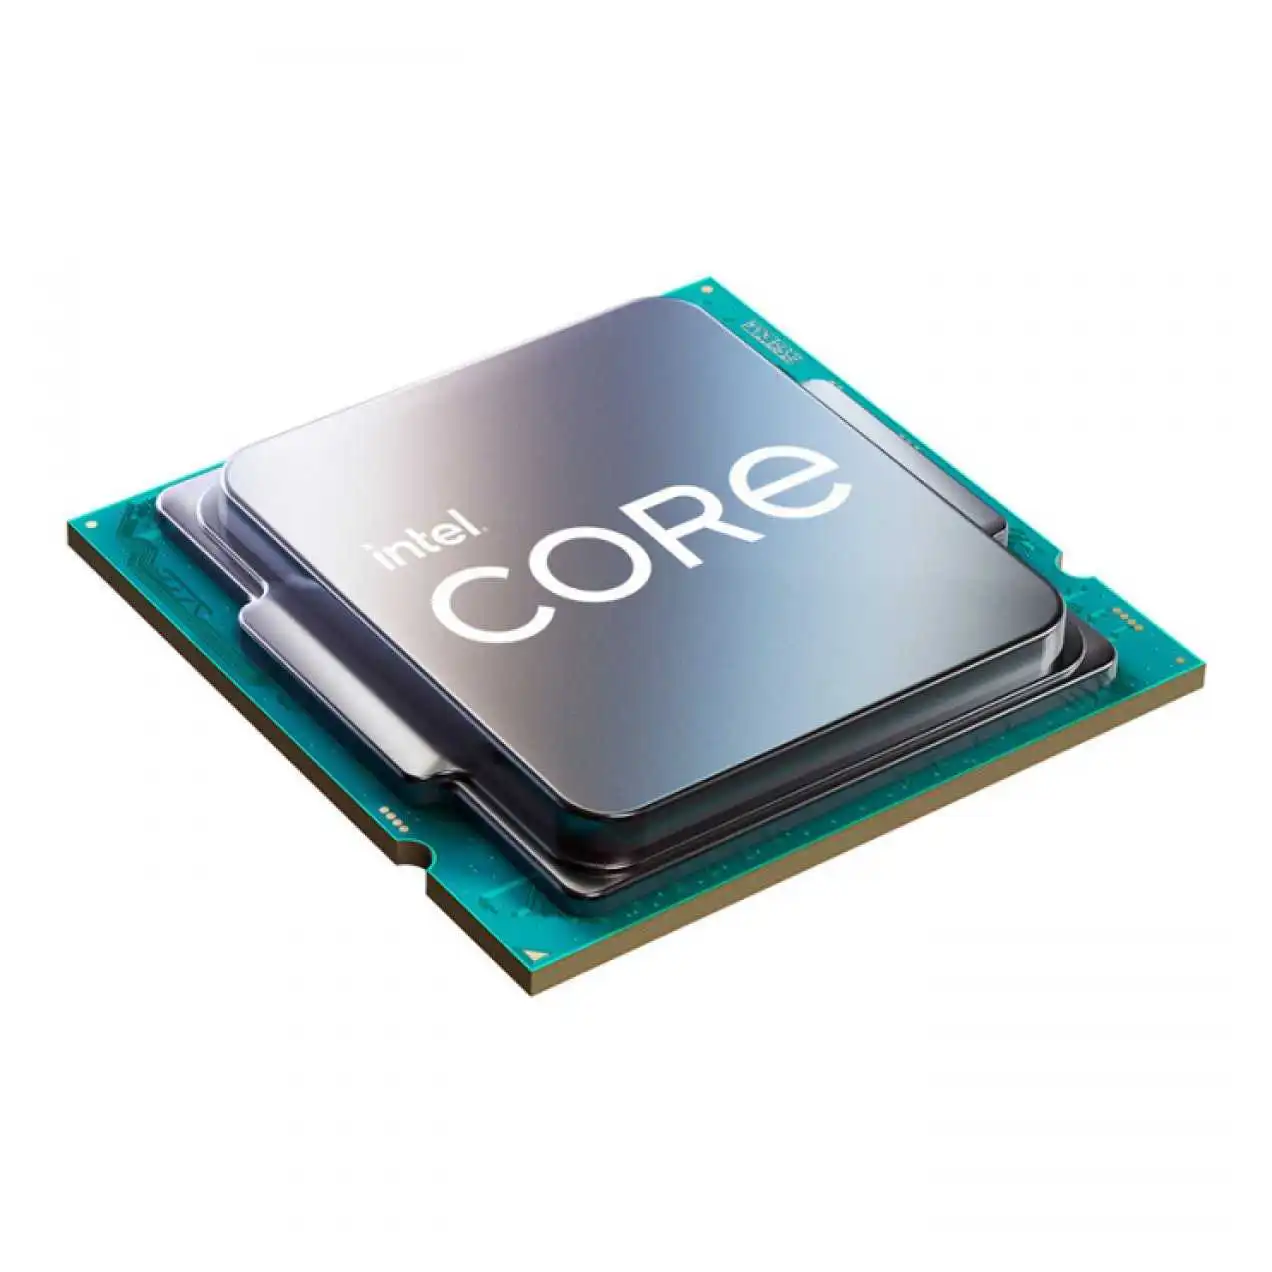 Intel-core-i5-11600k-3-9ghz-12mb-1200p-11-nesIl-ürün-resmi